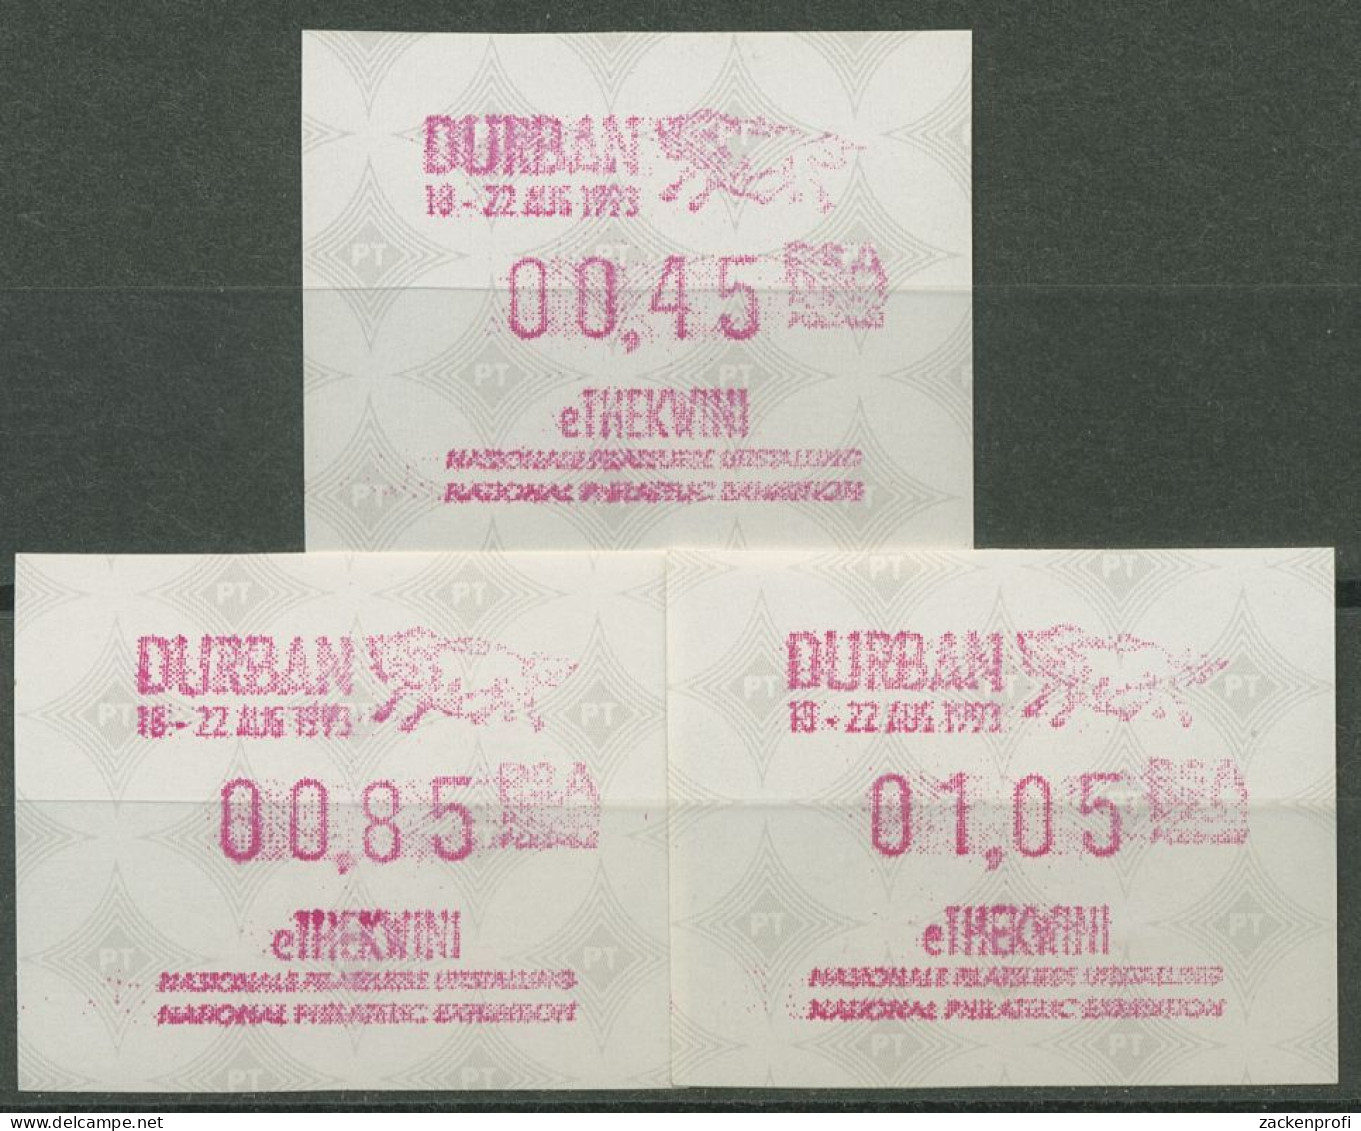 Südafrika ATM 1993 Austellung DURBAN, Satz 3 Werte ATM 12.2 S1 Postfrisch - Automatenmarken (Frama)